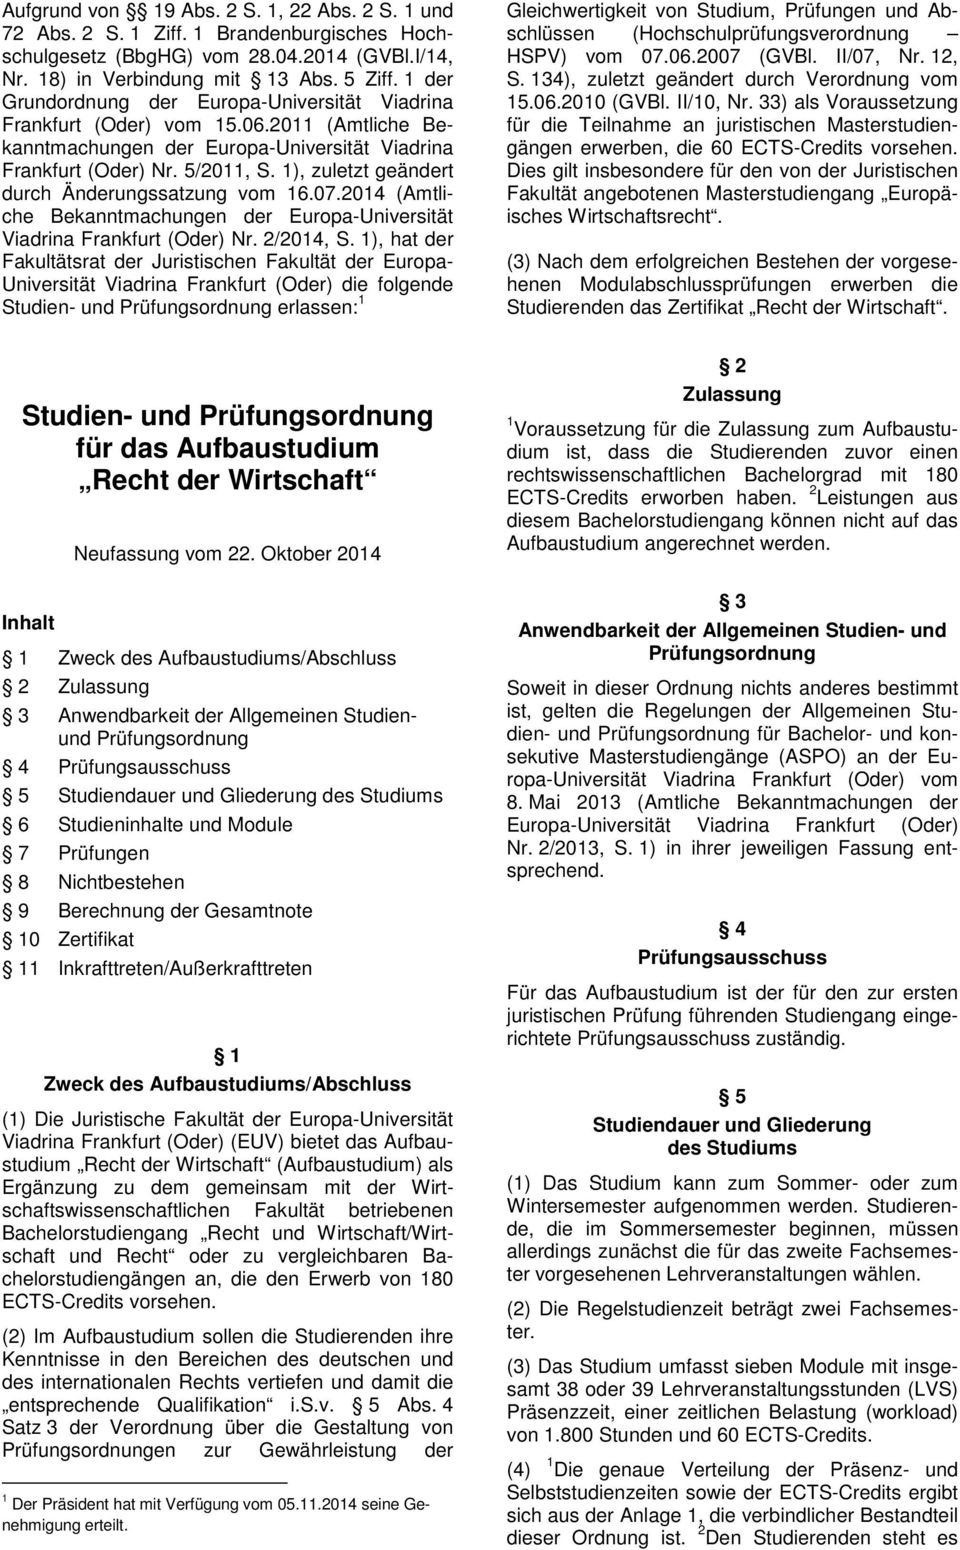 1), zuletzt geändert durch Änderungssatzung vom 16.07.2014 (Amtliche Bekanntmachungen der Europa-Universität Viadrina Frankfurt (Oder) Nr. 2/2014, S.